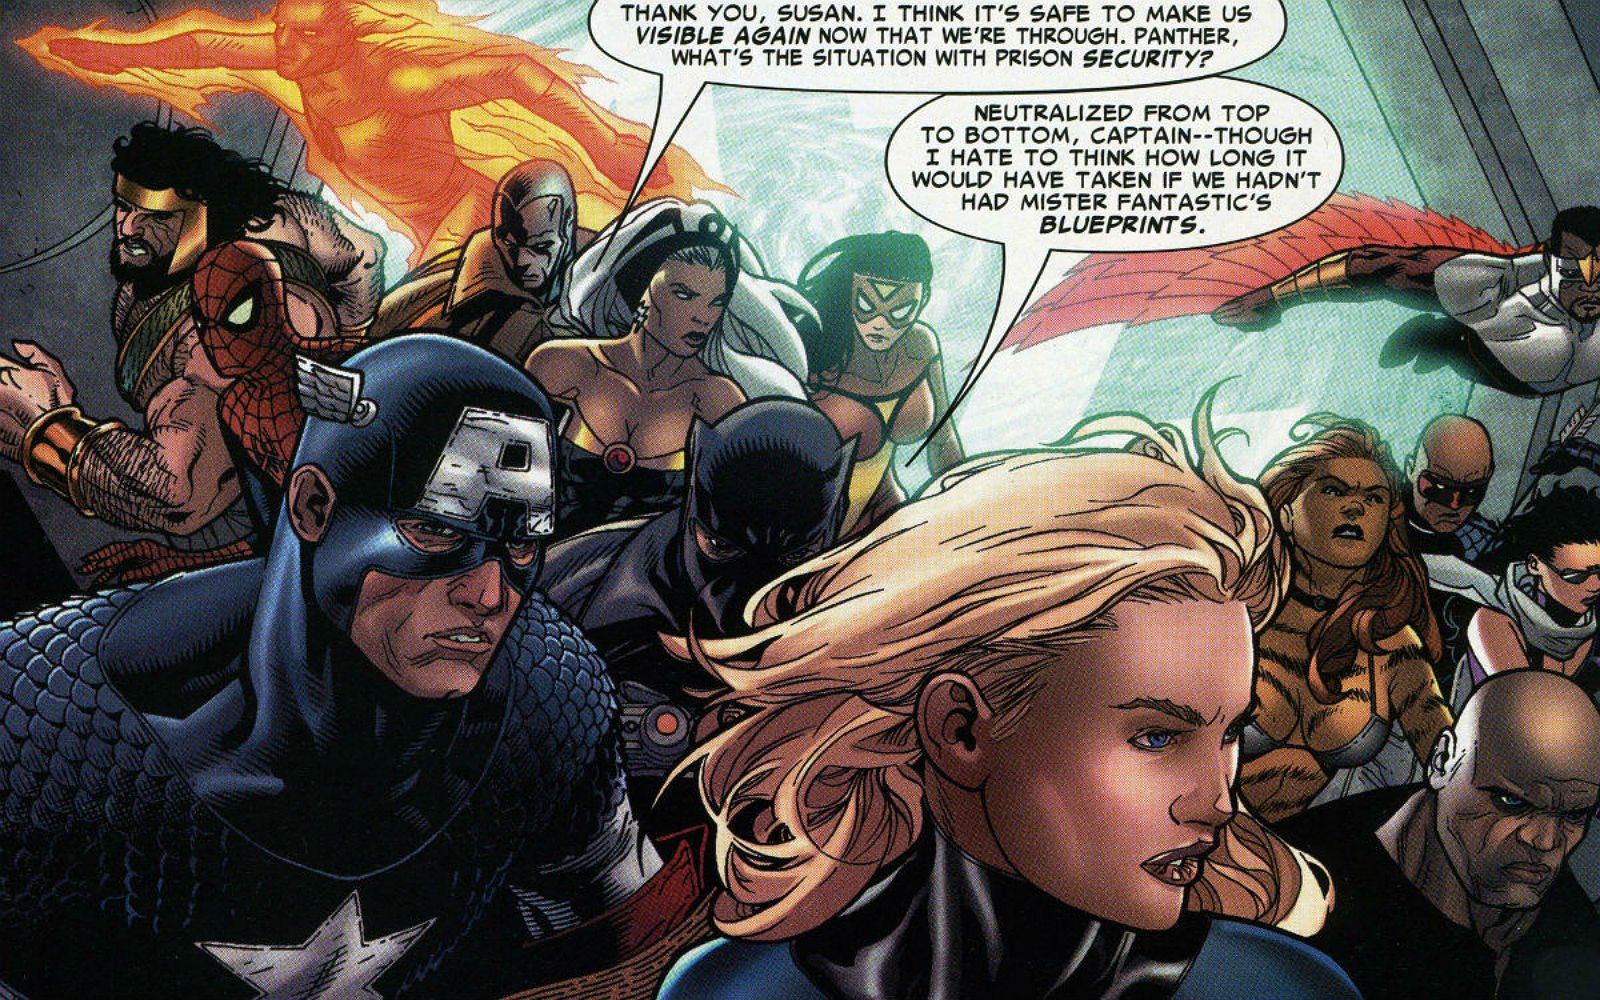 captain, America, 3, Civil, War, Marvel, Superhero, Action, Fighting, 1cacw, Warrior, Sci fi, Avengers, Poster Wallpaper